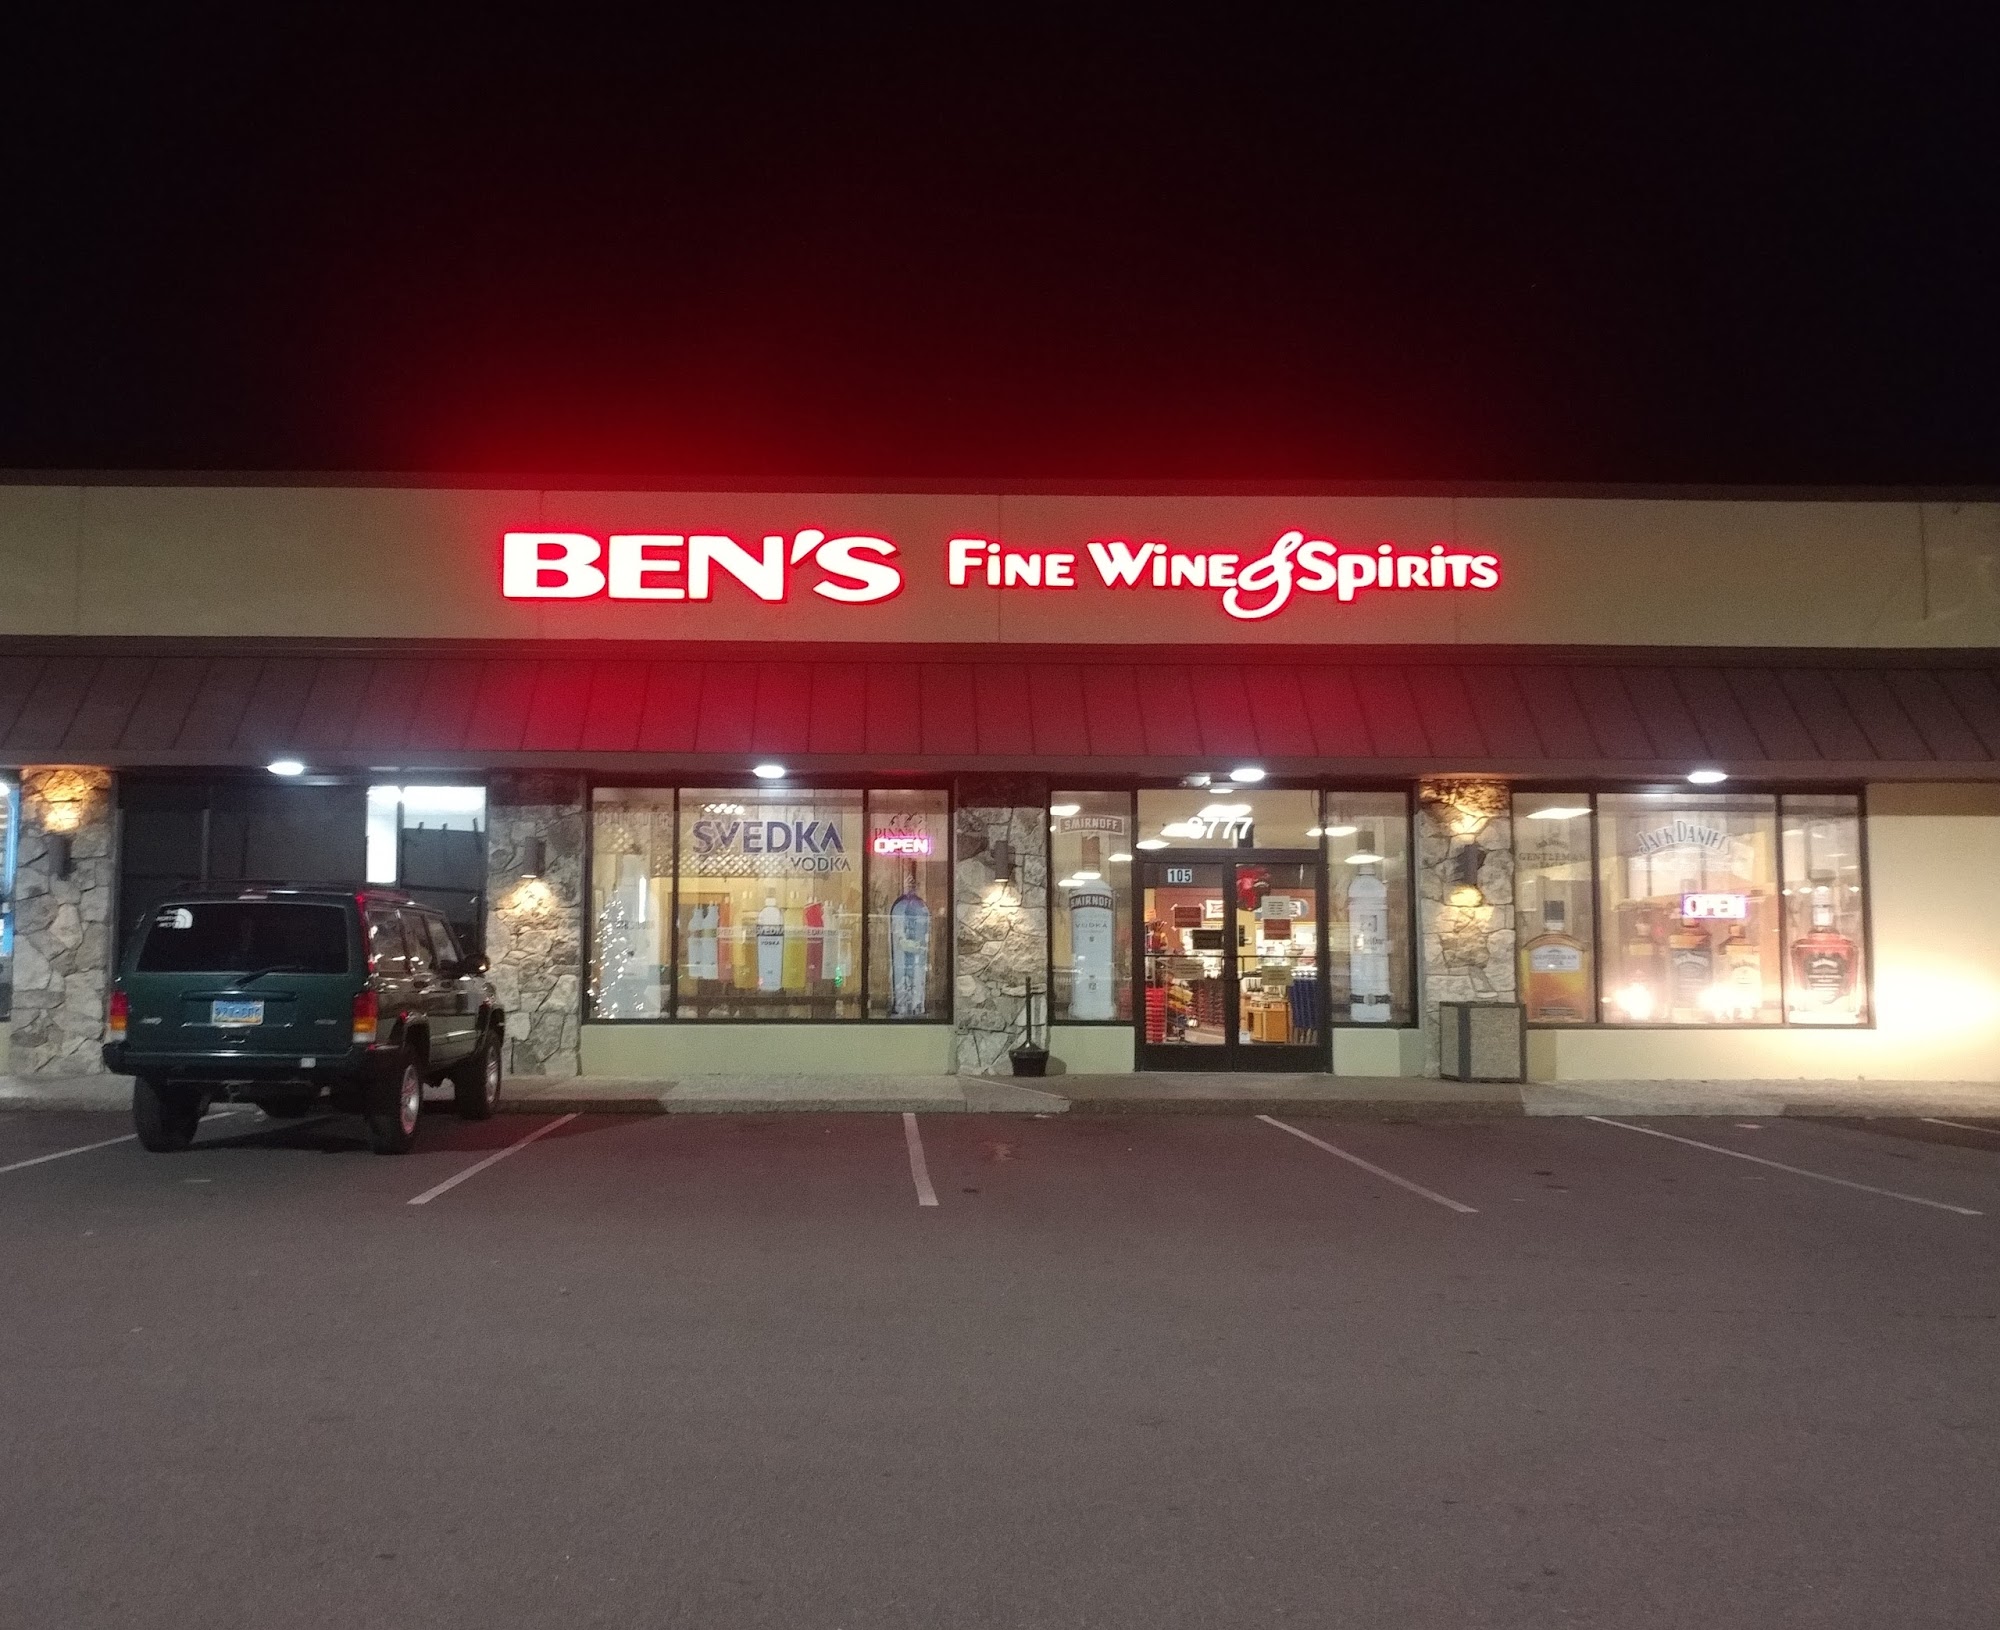 Ben's Fine Wine & Spirits